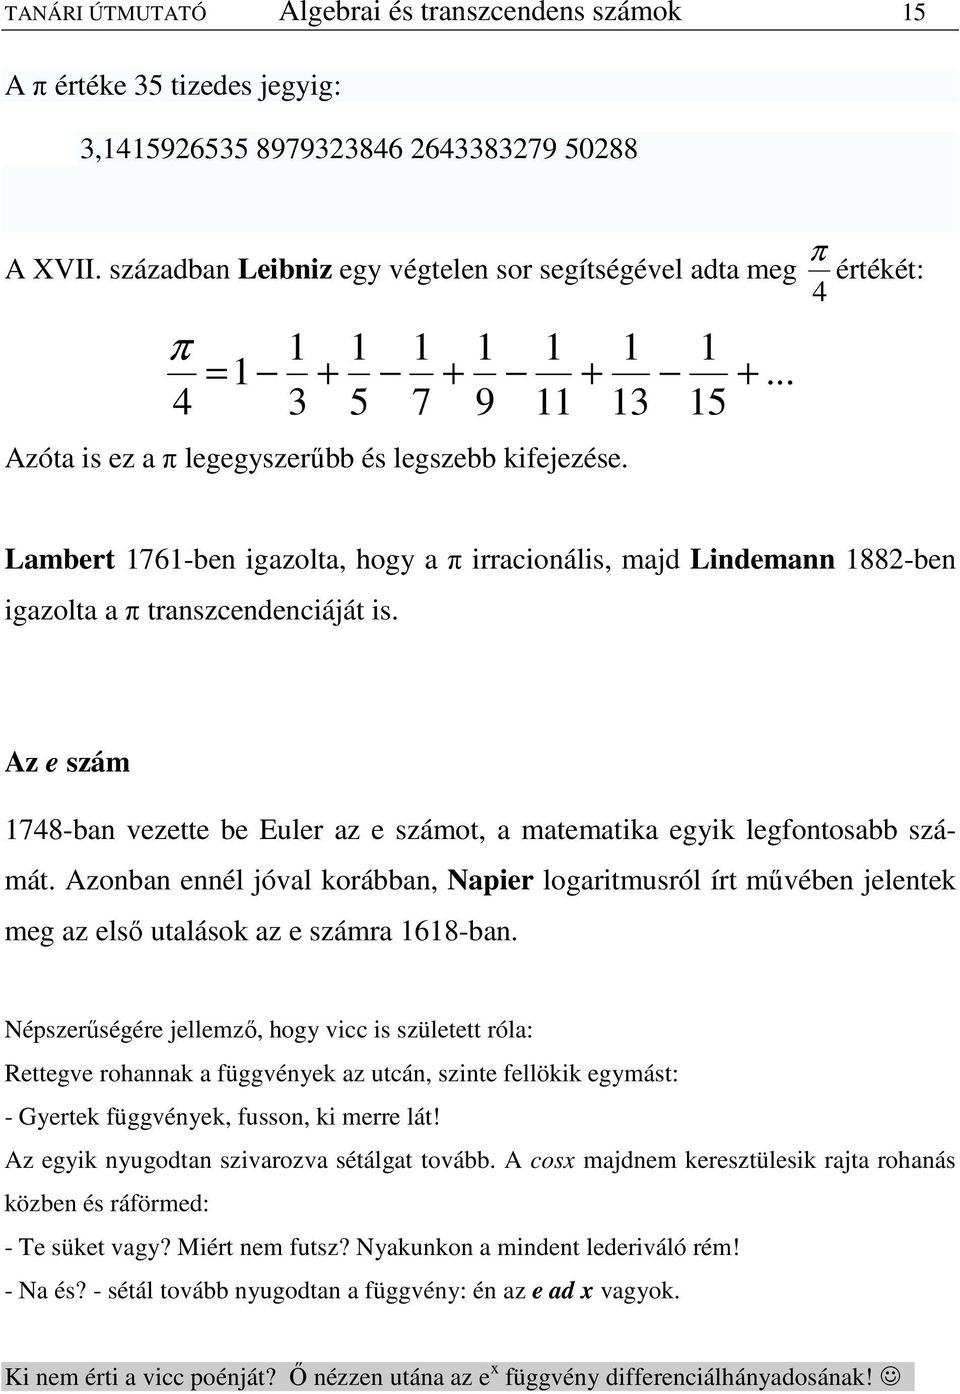 .. Lambert 76-ben igazolta, hogy a π irracionális, maj Linemann 88-ben igazolta a π transzcenenciáját is. Az e szám 748-ban vezette be Euler az e számot, a matematika egyik legfontosabb számát.